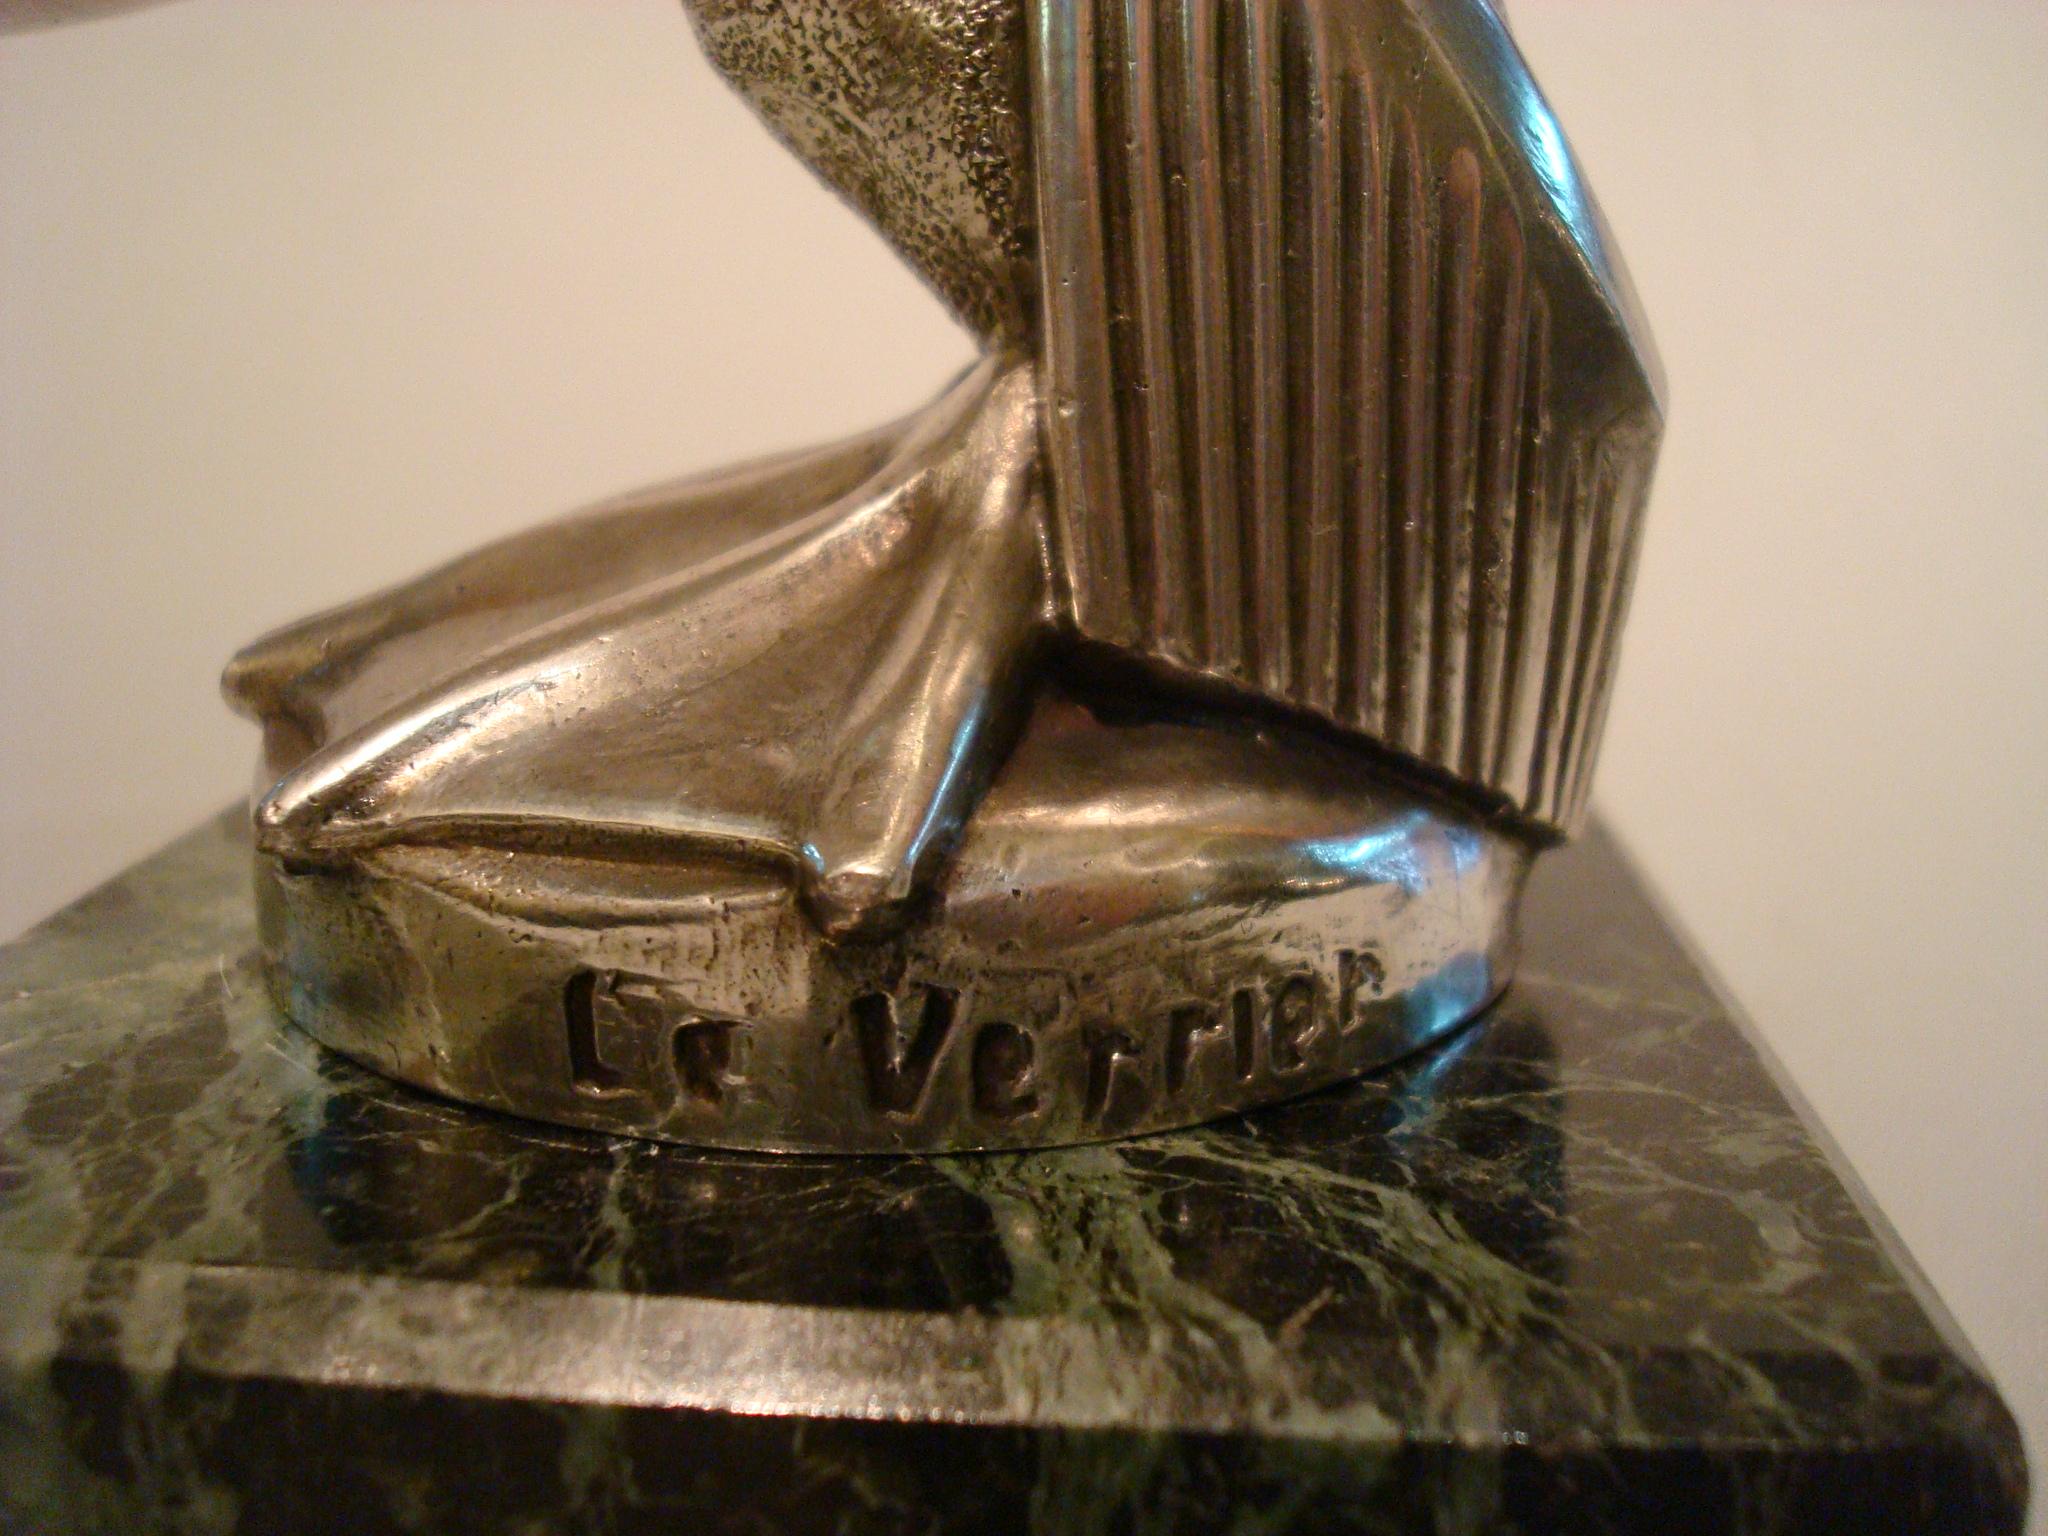 Bird sculpture / car mascot / paperweight / packet watch holder.
Art Deco 